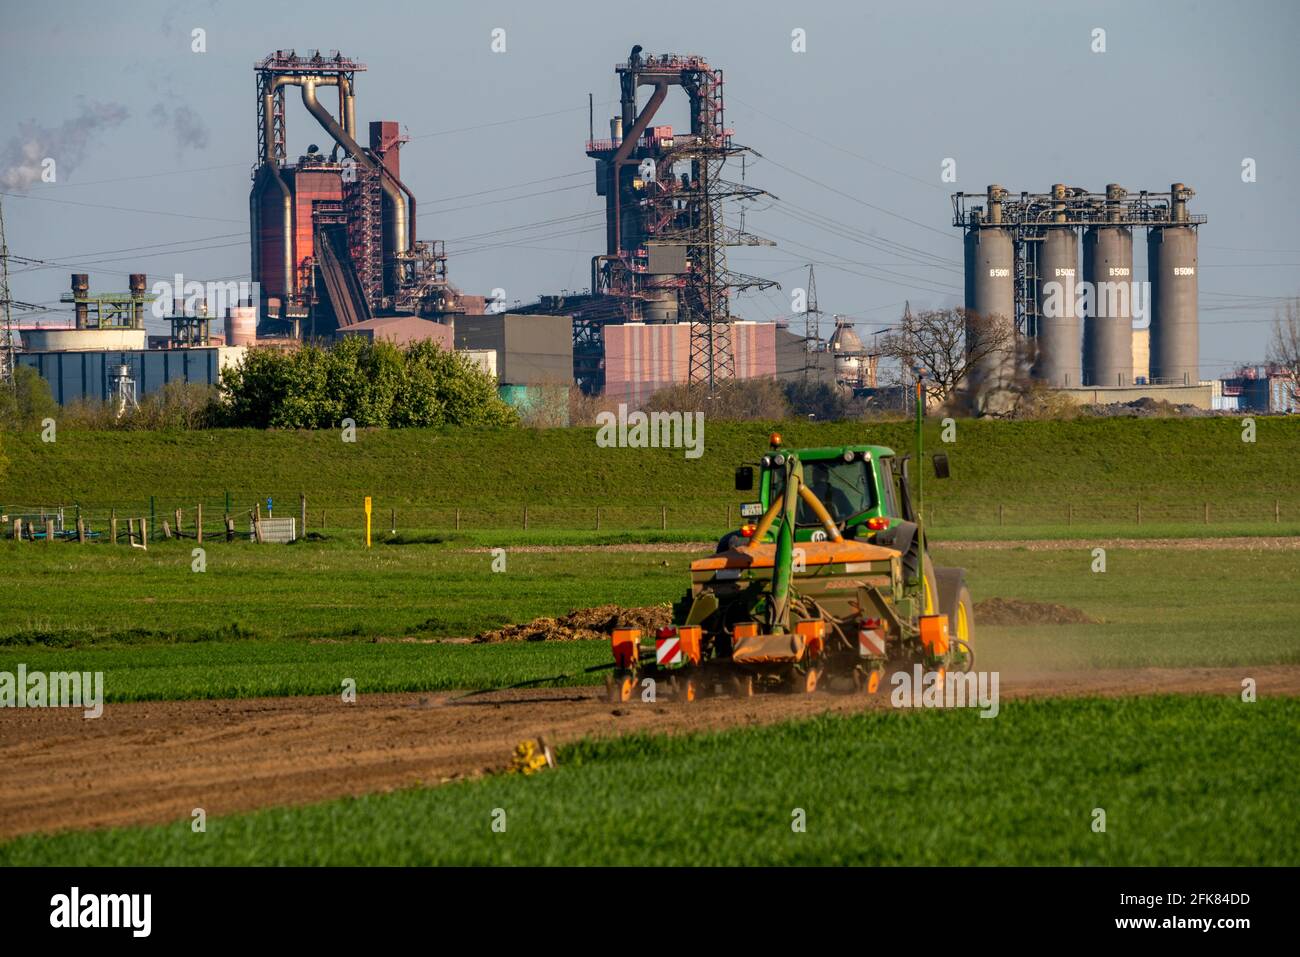 Agricultor que trabaja en el campo, Duisburg-Baerl, sembrando, al fondo, el alto horno ThyssenKrupp Steel Steelworks, Duisburg, NRW, Alemania Foto de stock